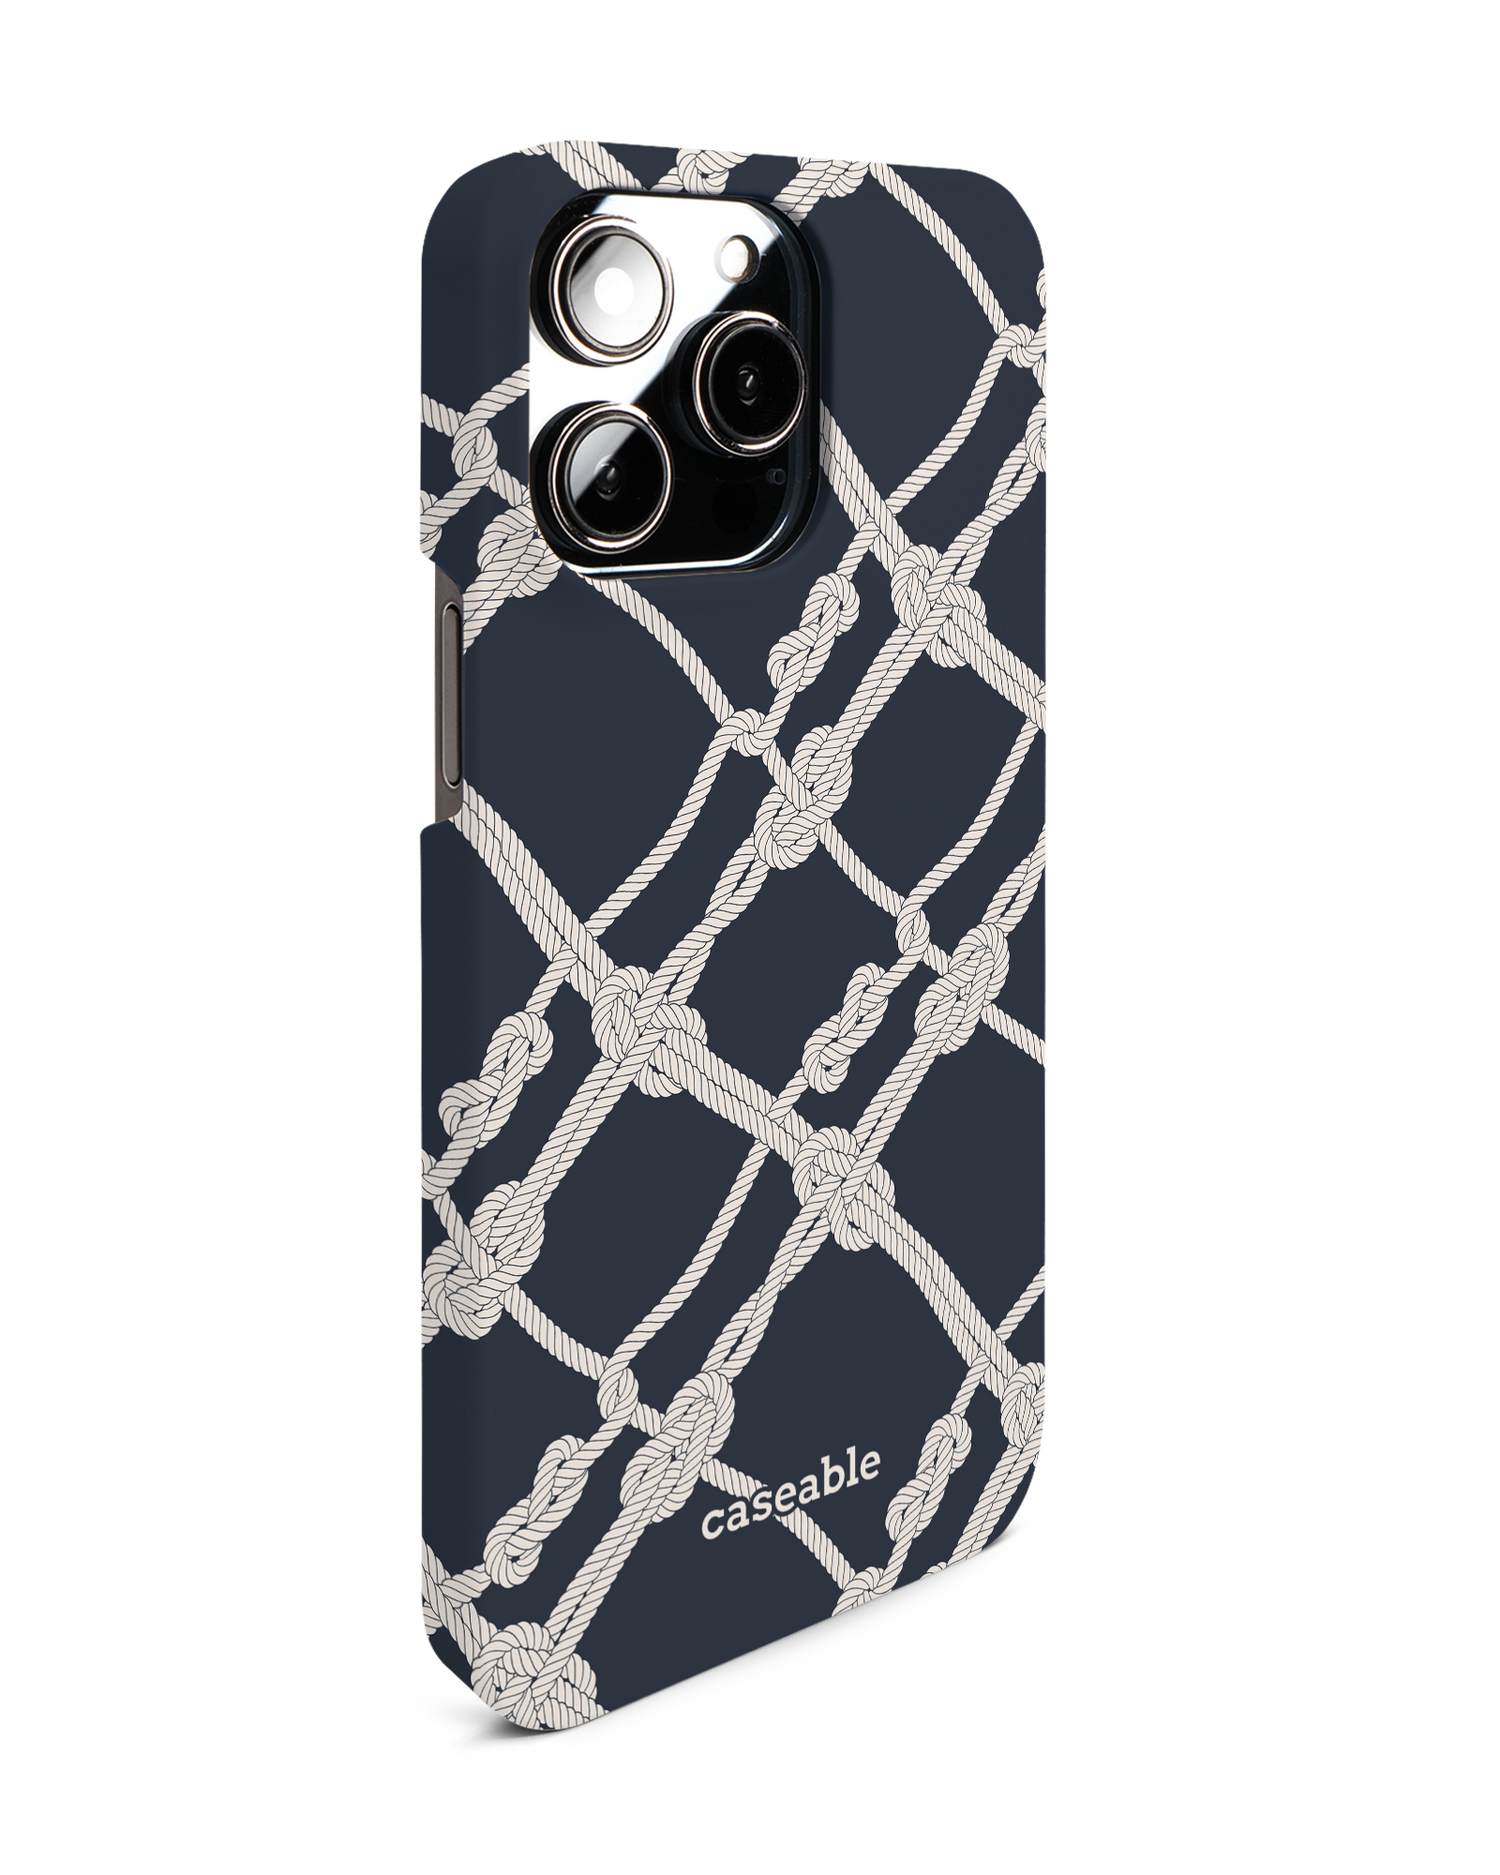 iPhone 11 Pro Max Premium Phone Case Nautical Knots